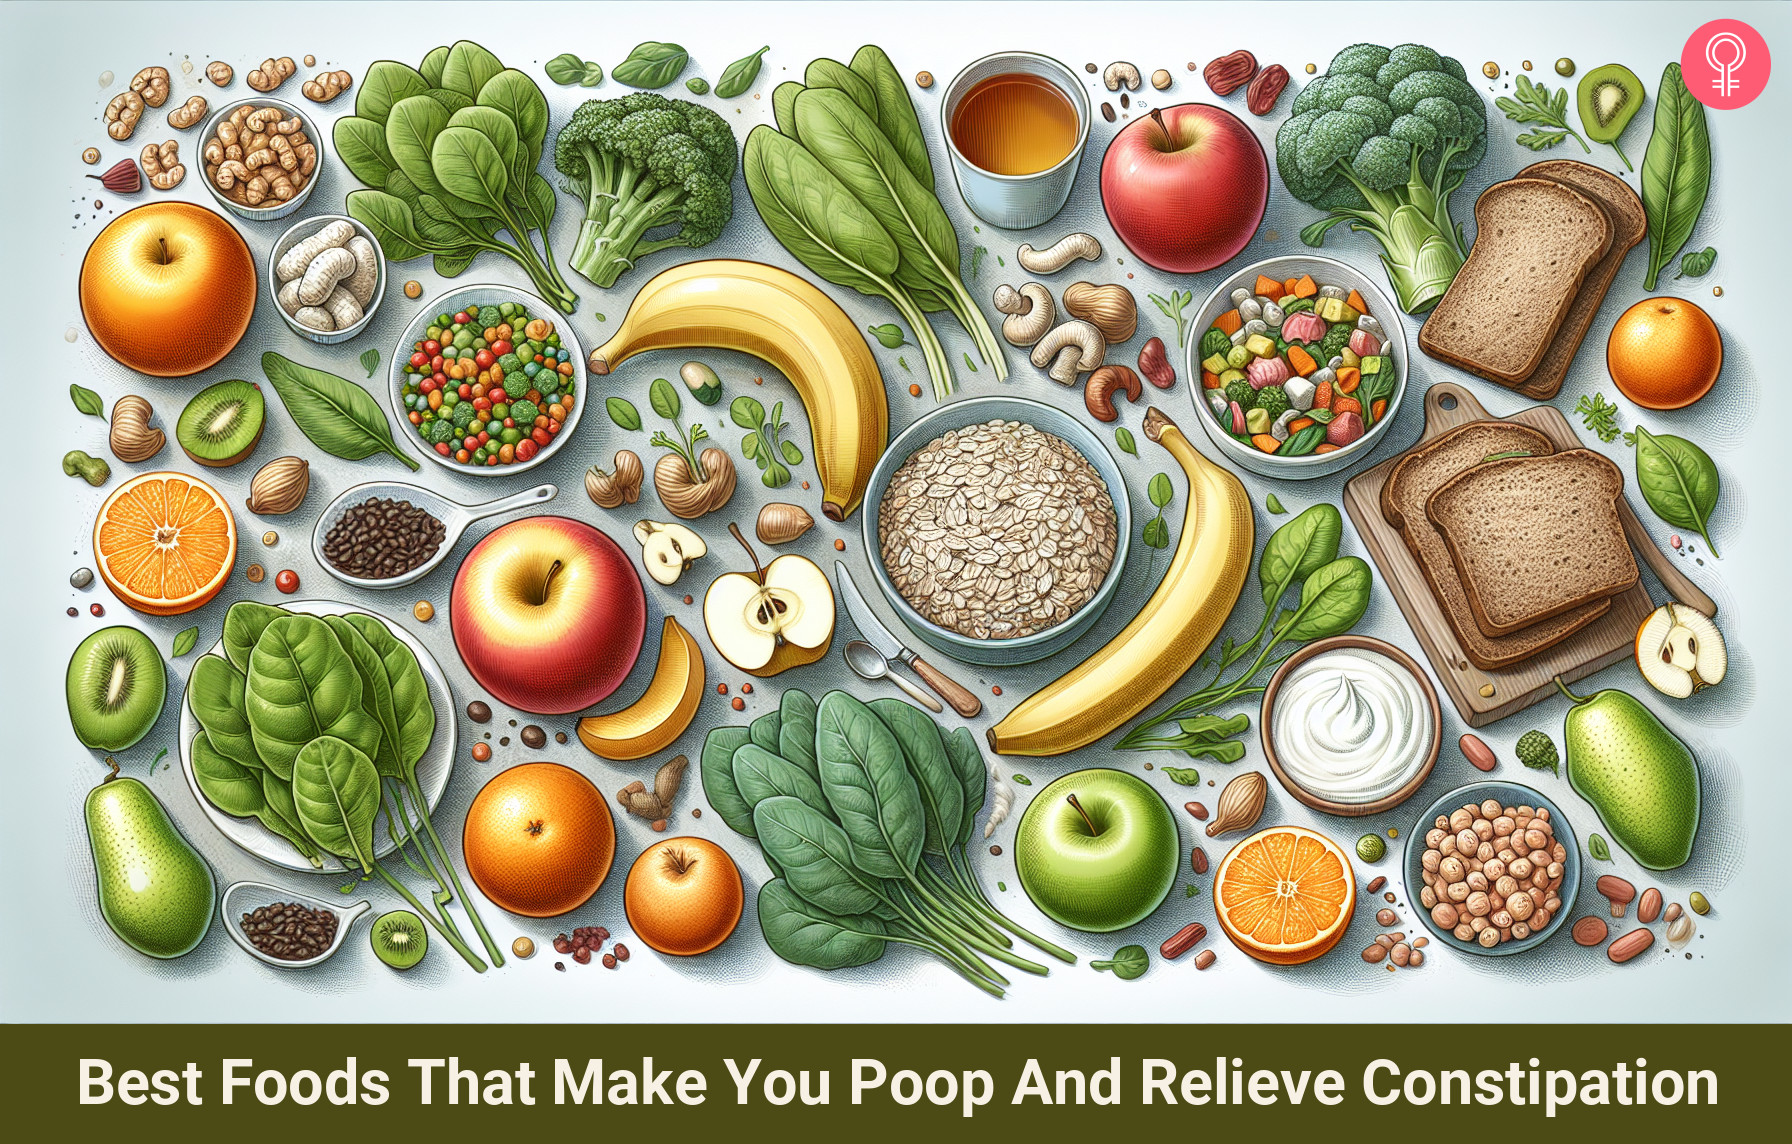 foods that make you poop_illustration